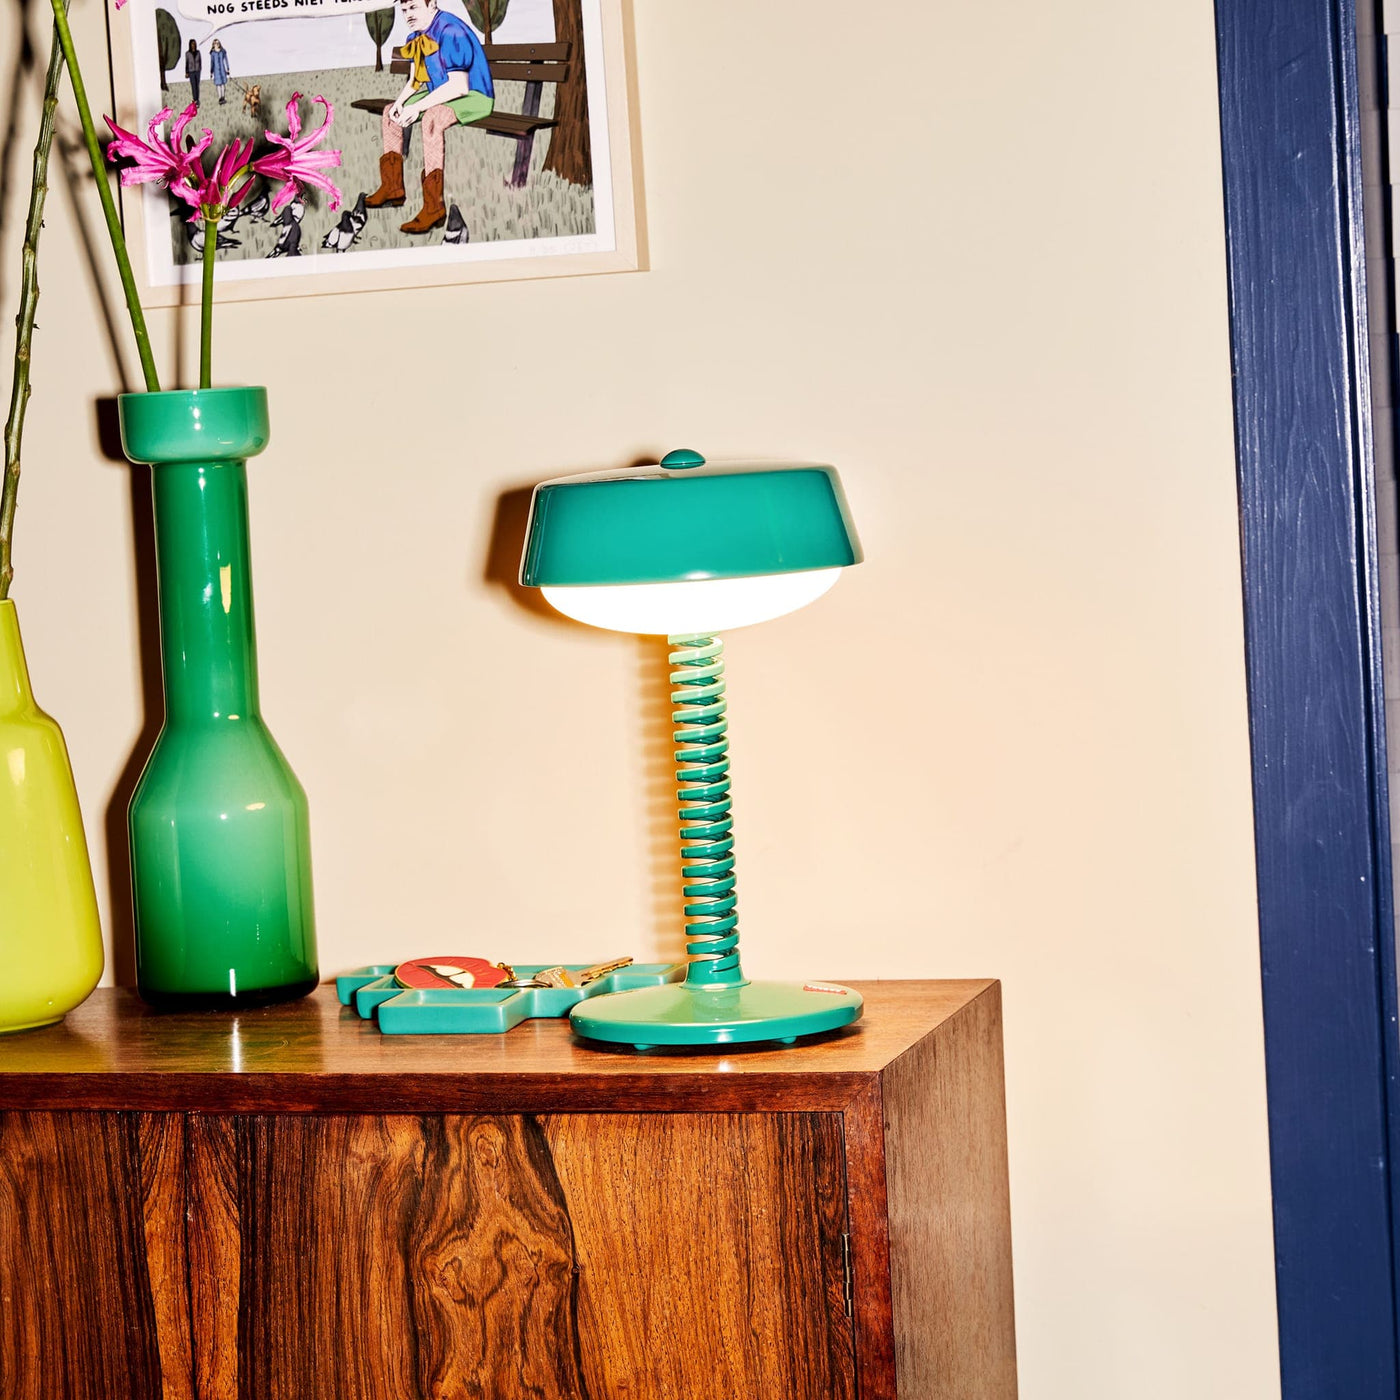 Éclairez votre espace avec style grâce à Bellboy de Fatboy, une lampe de table sans fil en aluminium durable. Rechargeable et pratique, parfaite pour toutes les pièces.